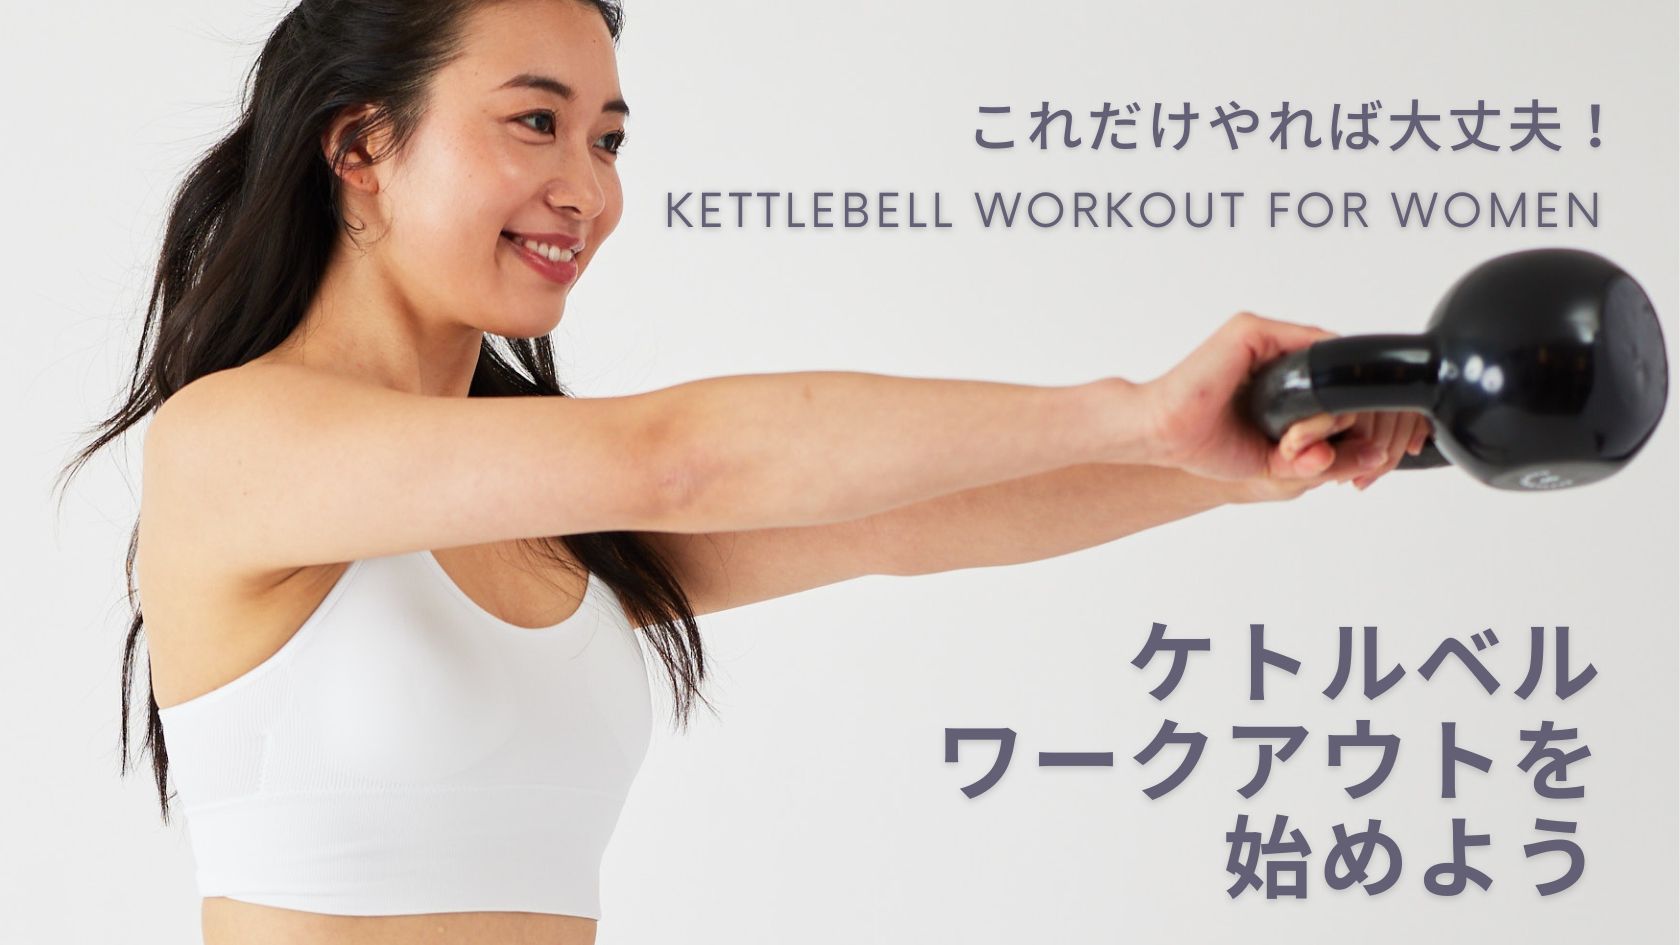 ケトルベルを使った全身トレーニング-日本の女性におすすめな理由と効果について | KITライフスタイルブログ